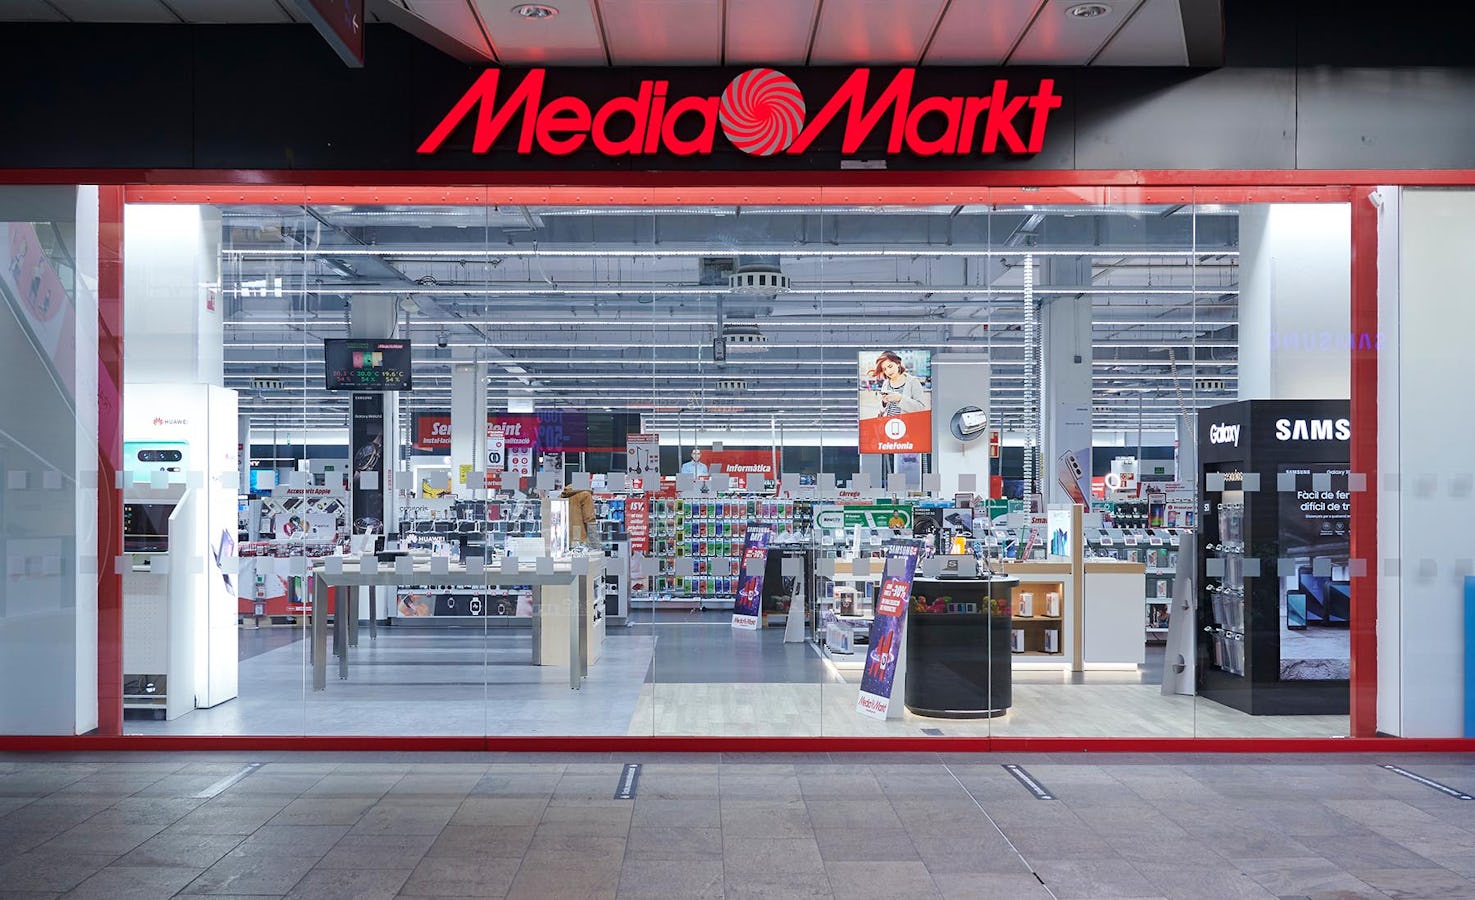 Uppgift: Media Markt lämnar Sverige